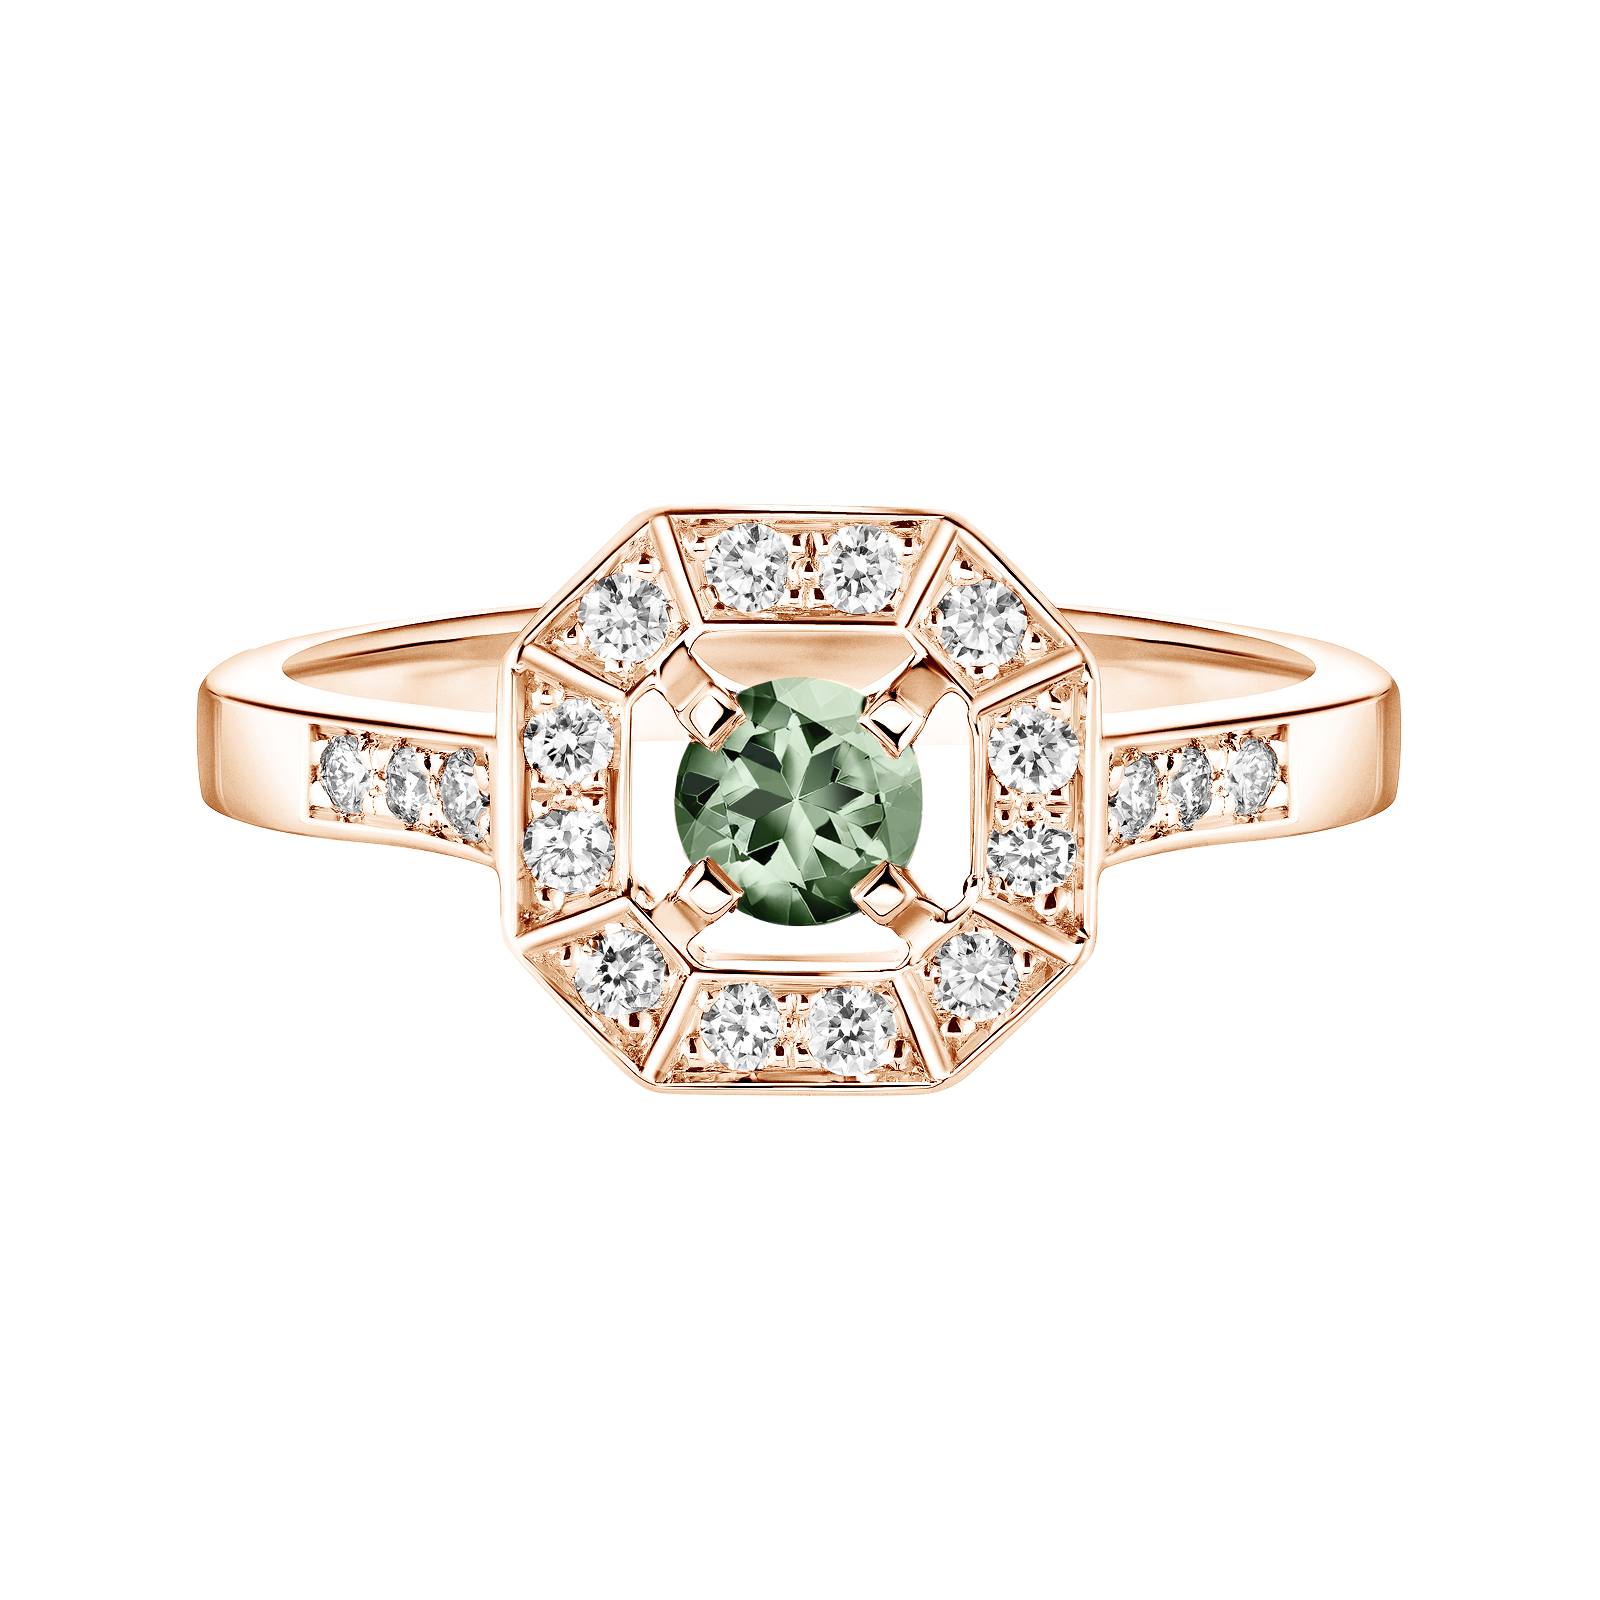 Ring Roségold Grüner Saphir und diamanten Art Déco Rond 4 mm 1